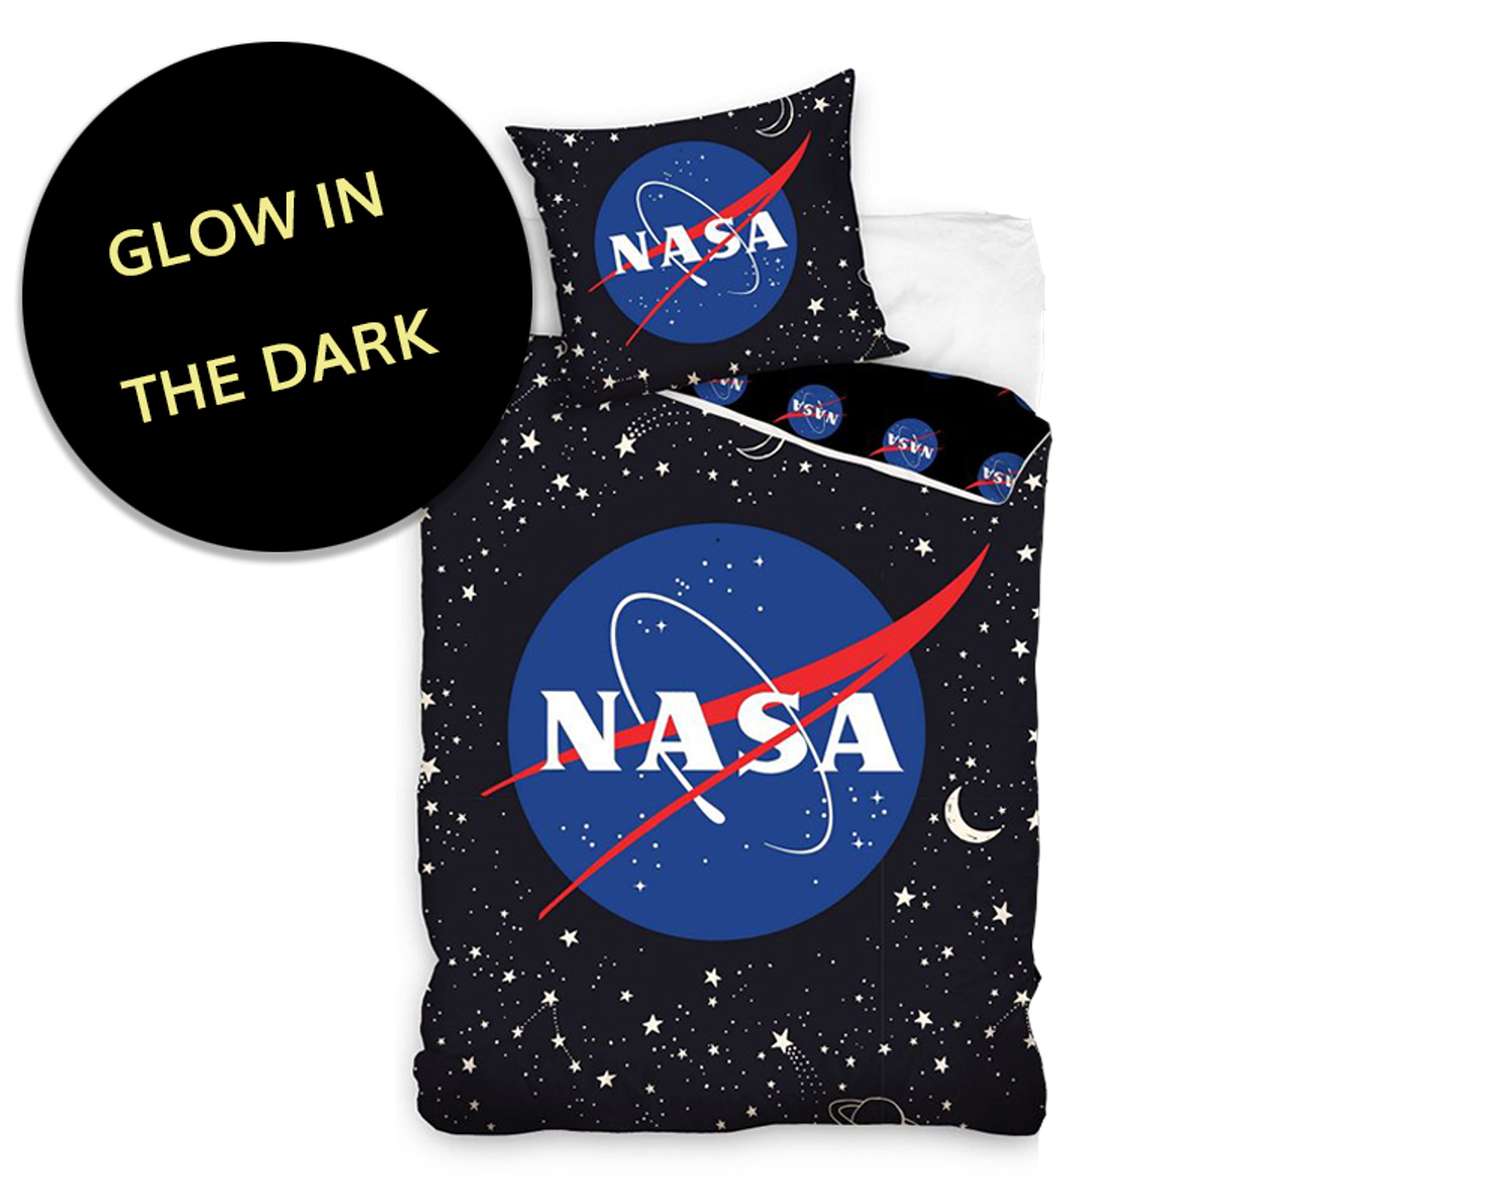 Kinder dekbedovertrek NASA Glow In The Dark voorkant